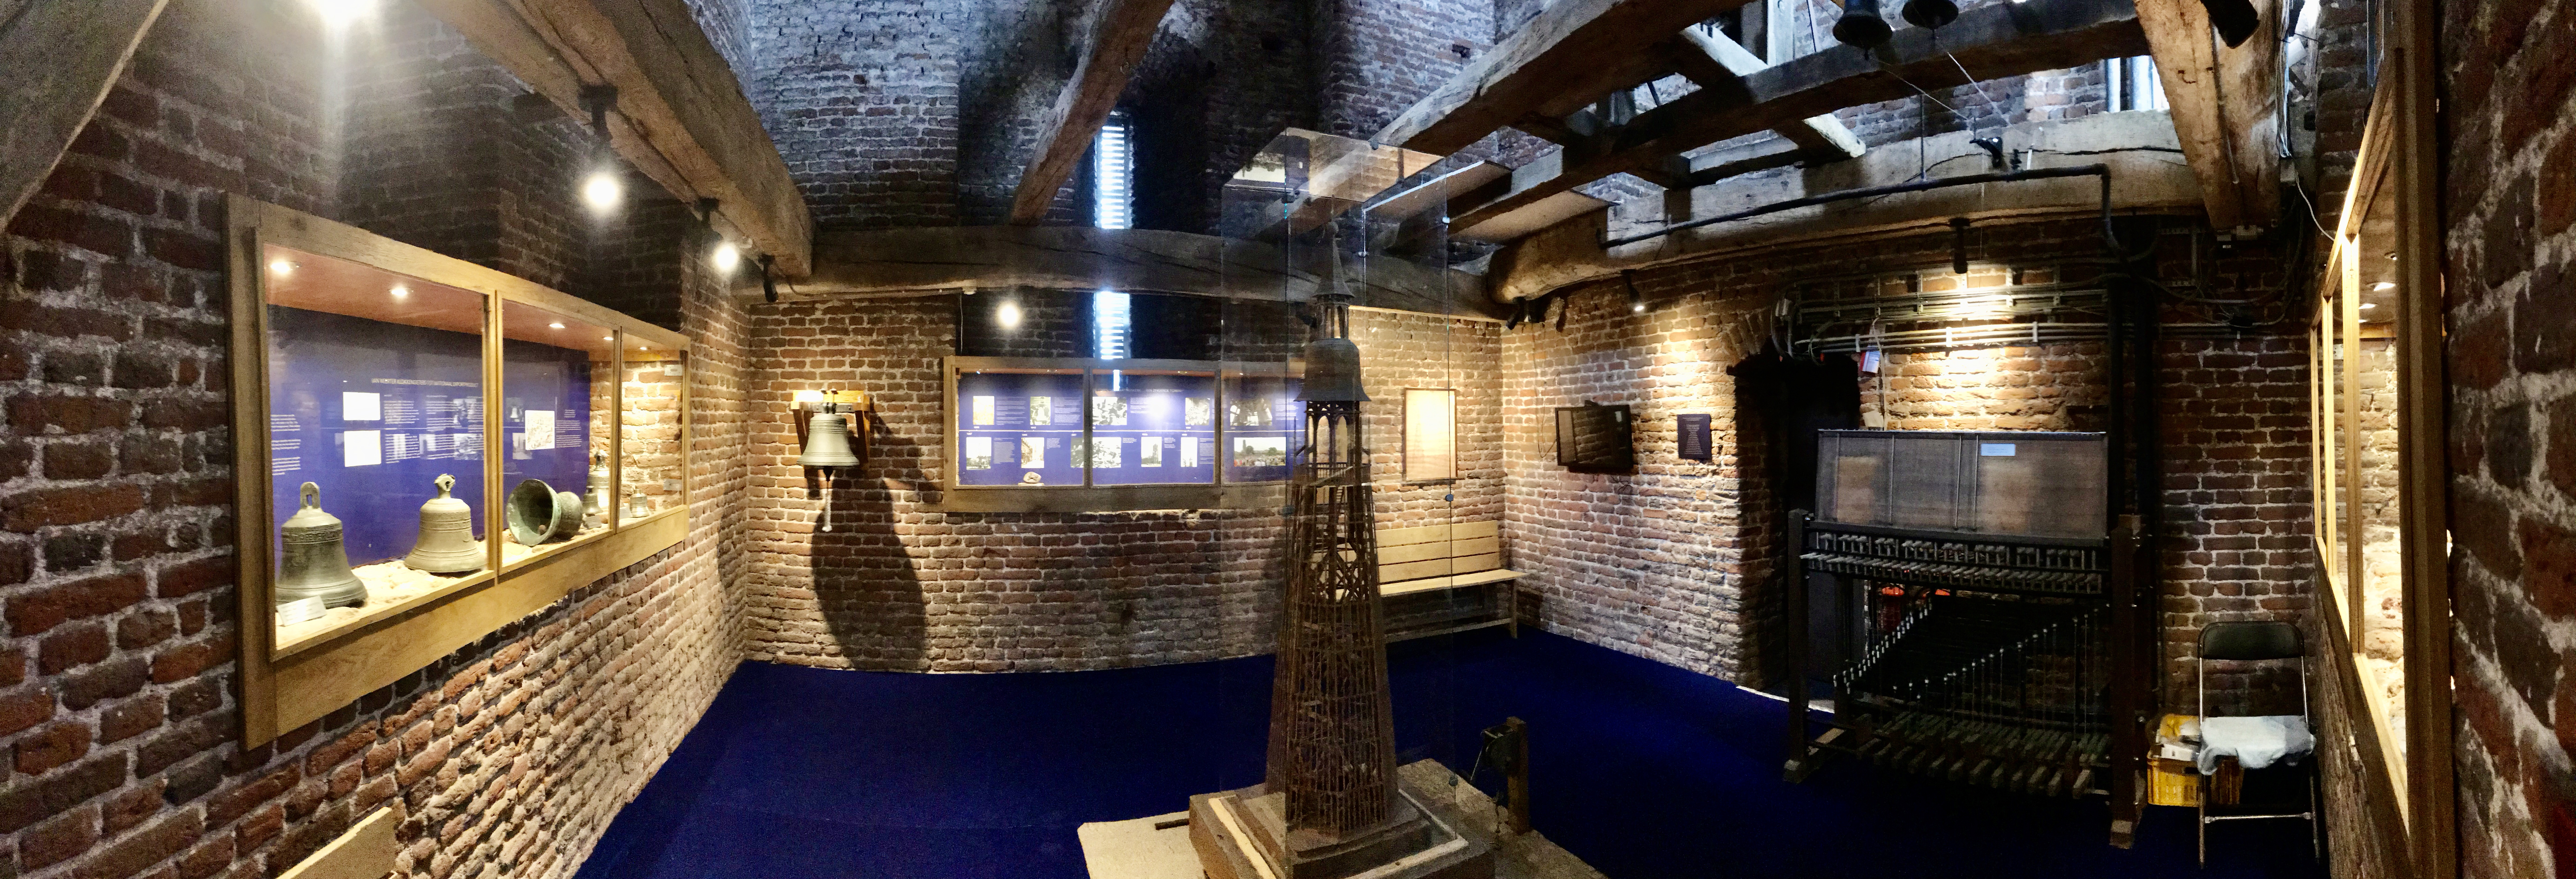 Toren expositie